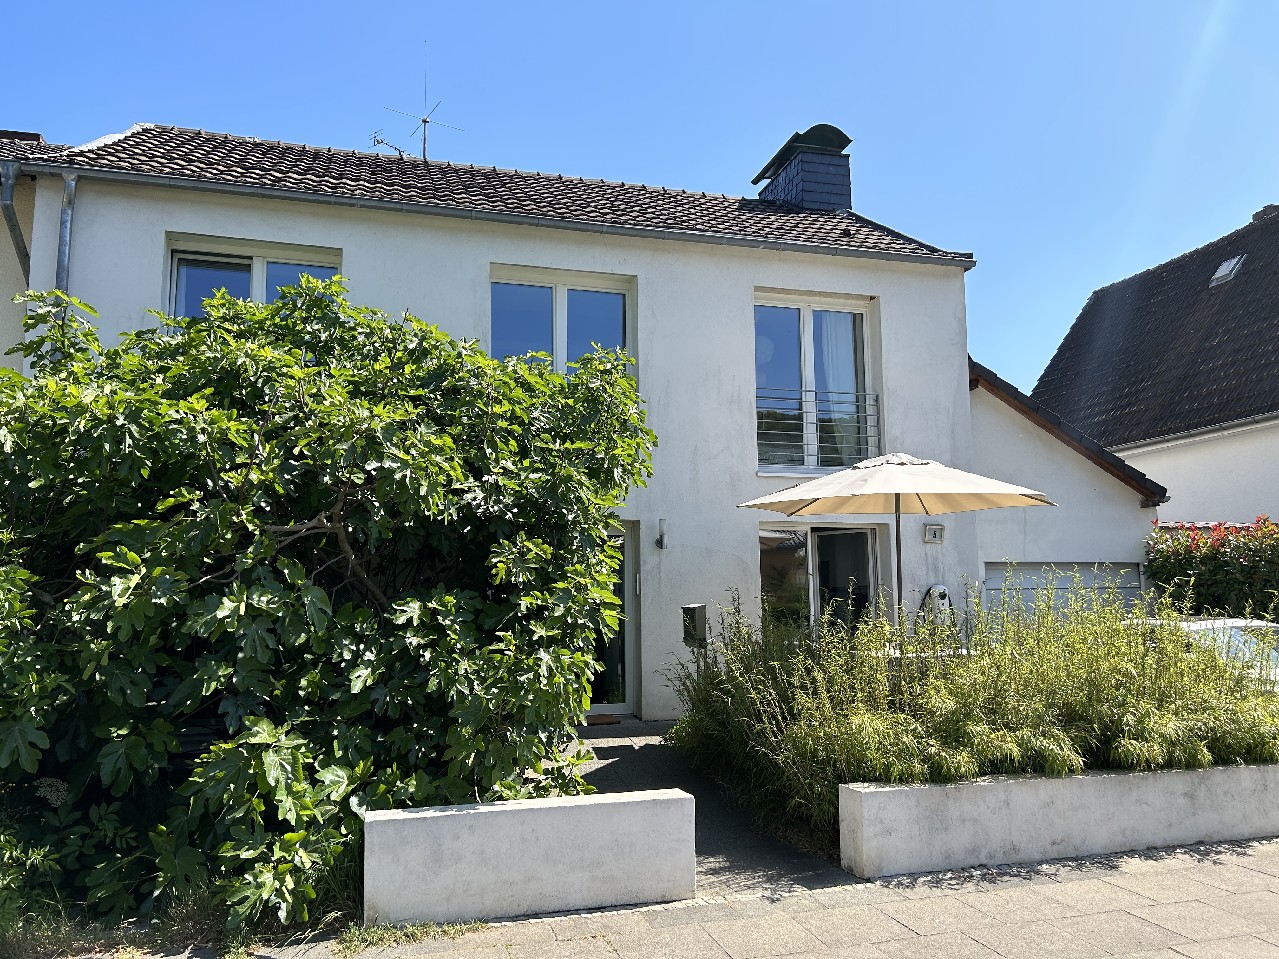 VERKAUFT! Großzügiges Niedrigenergiehaus mit Einliegerwohnung und Garten in Bestlage Dottendorf